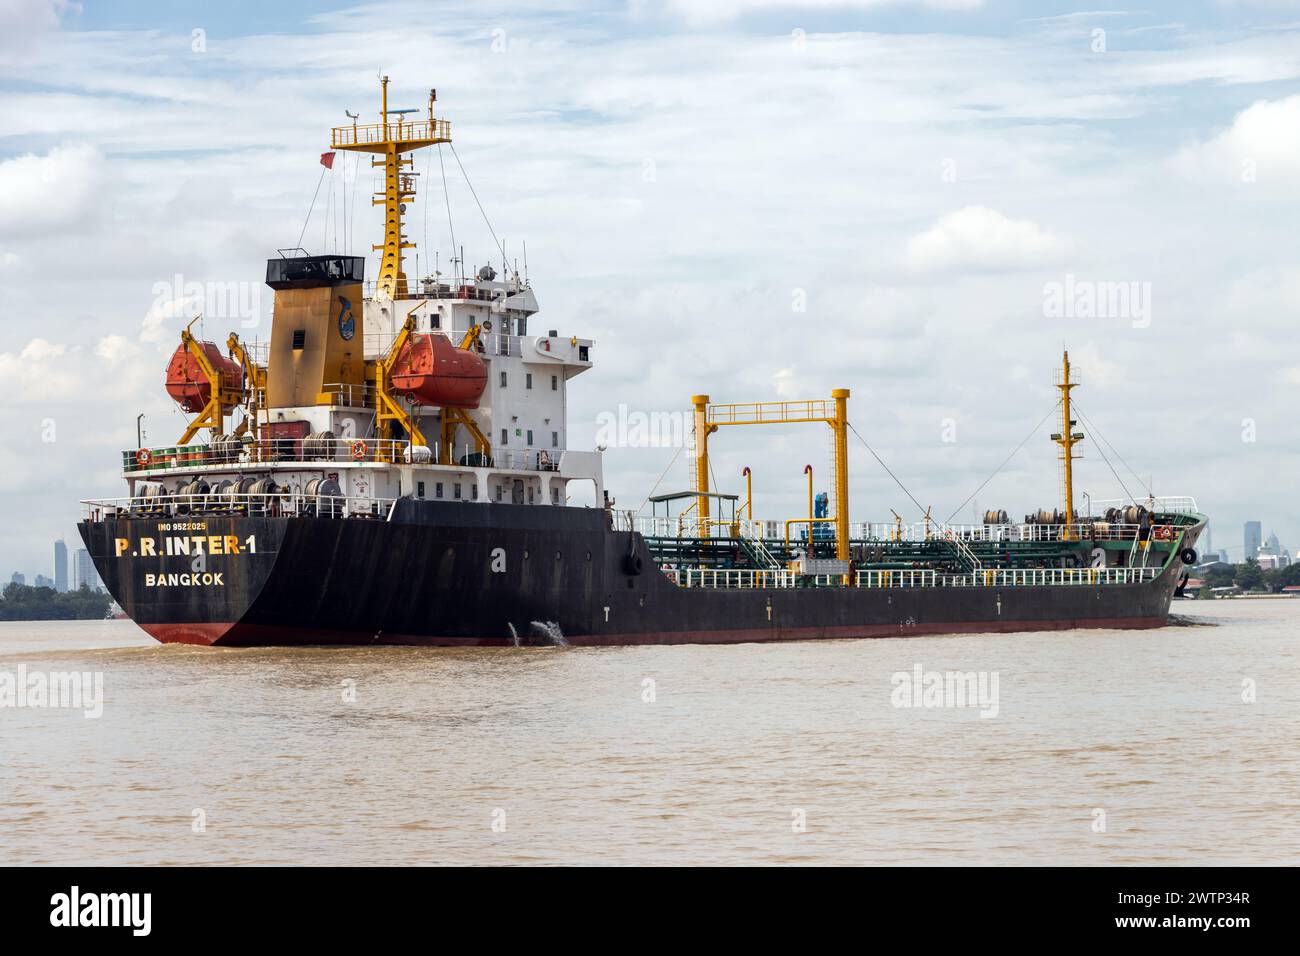 SAMUT PRAKAN, THAILAND, 11. Oktober 2023, das Schiff P.R.INTER 1 ein Chemikalientanker, in der Mündung des Chao Phraya Flusses. Stockfoto